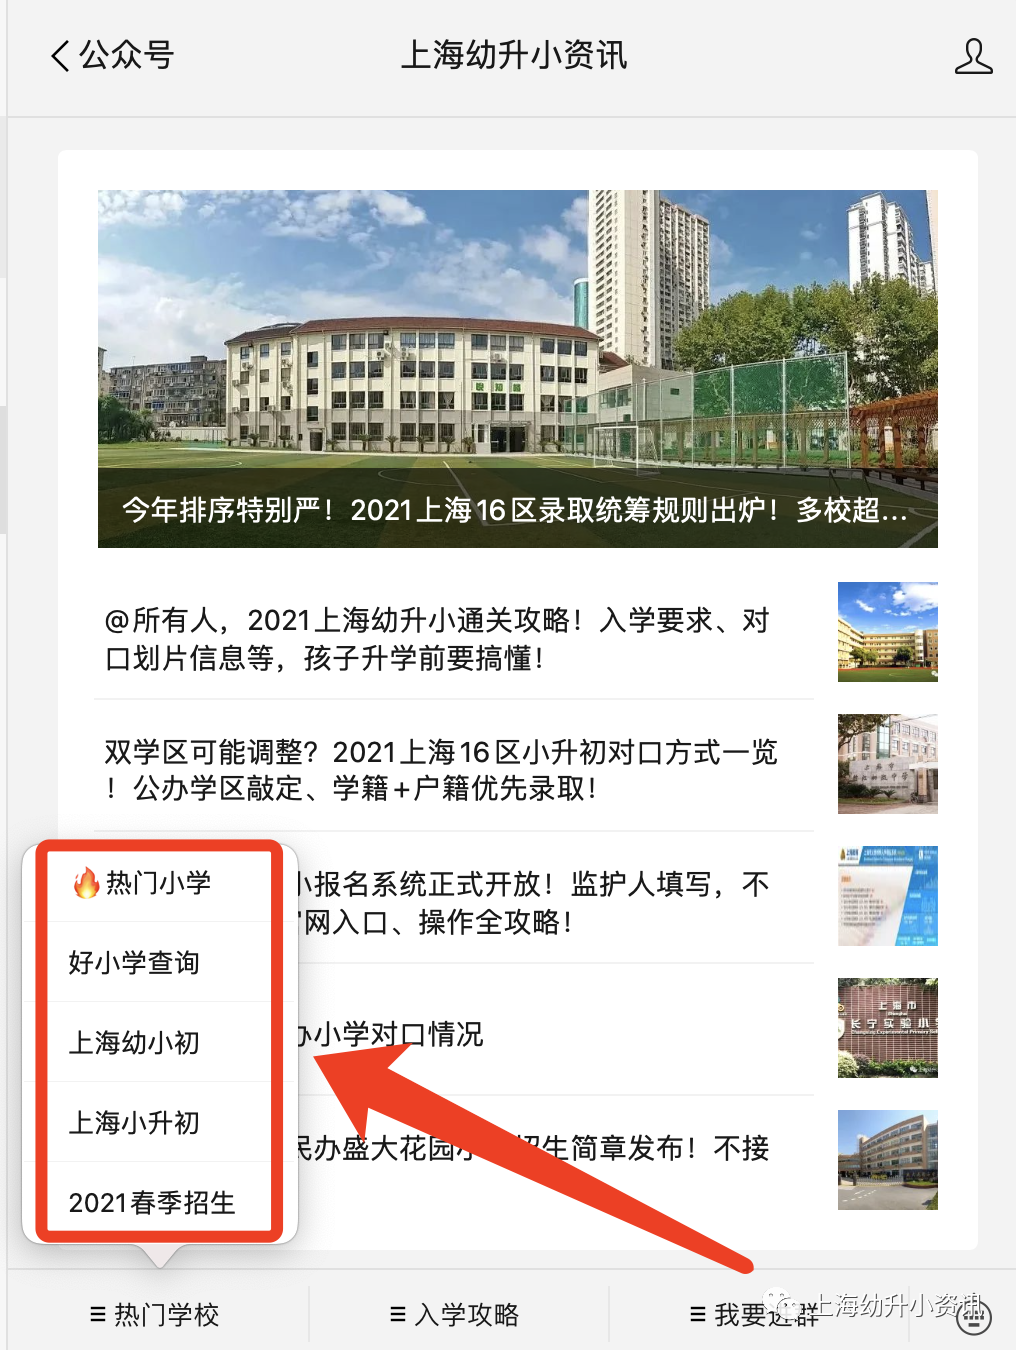 影响报名验证 上海16区信息登记地点重磅出炉 非本市幼儿园毕业适龄儿童必须了解 上海幼升小资讯 微信公众号文章阅读 Wemp